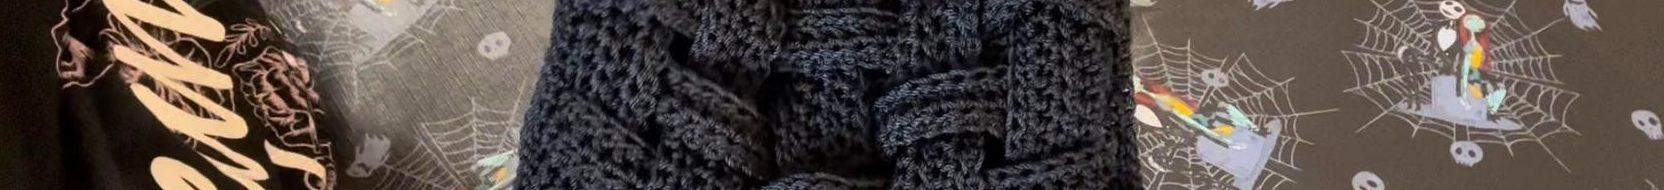 Free Crochet Purse Pattern